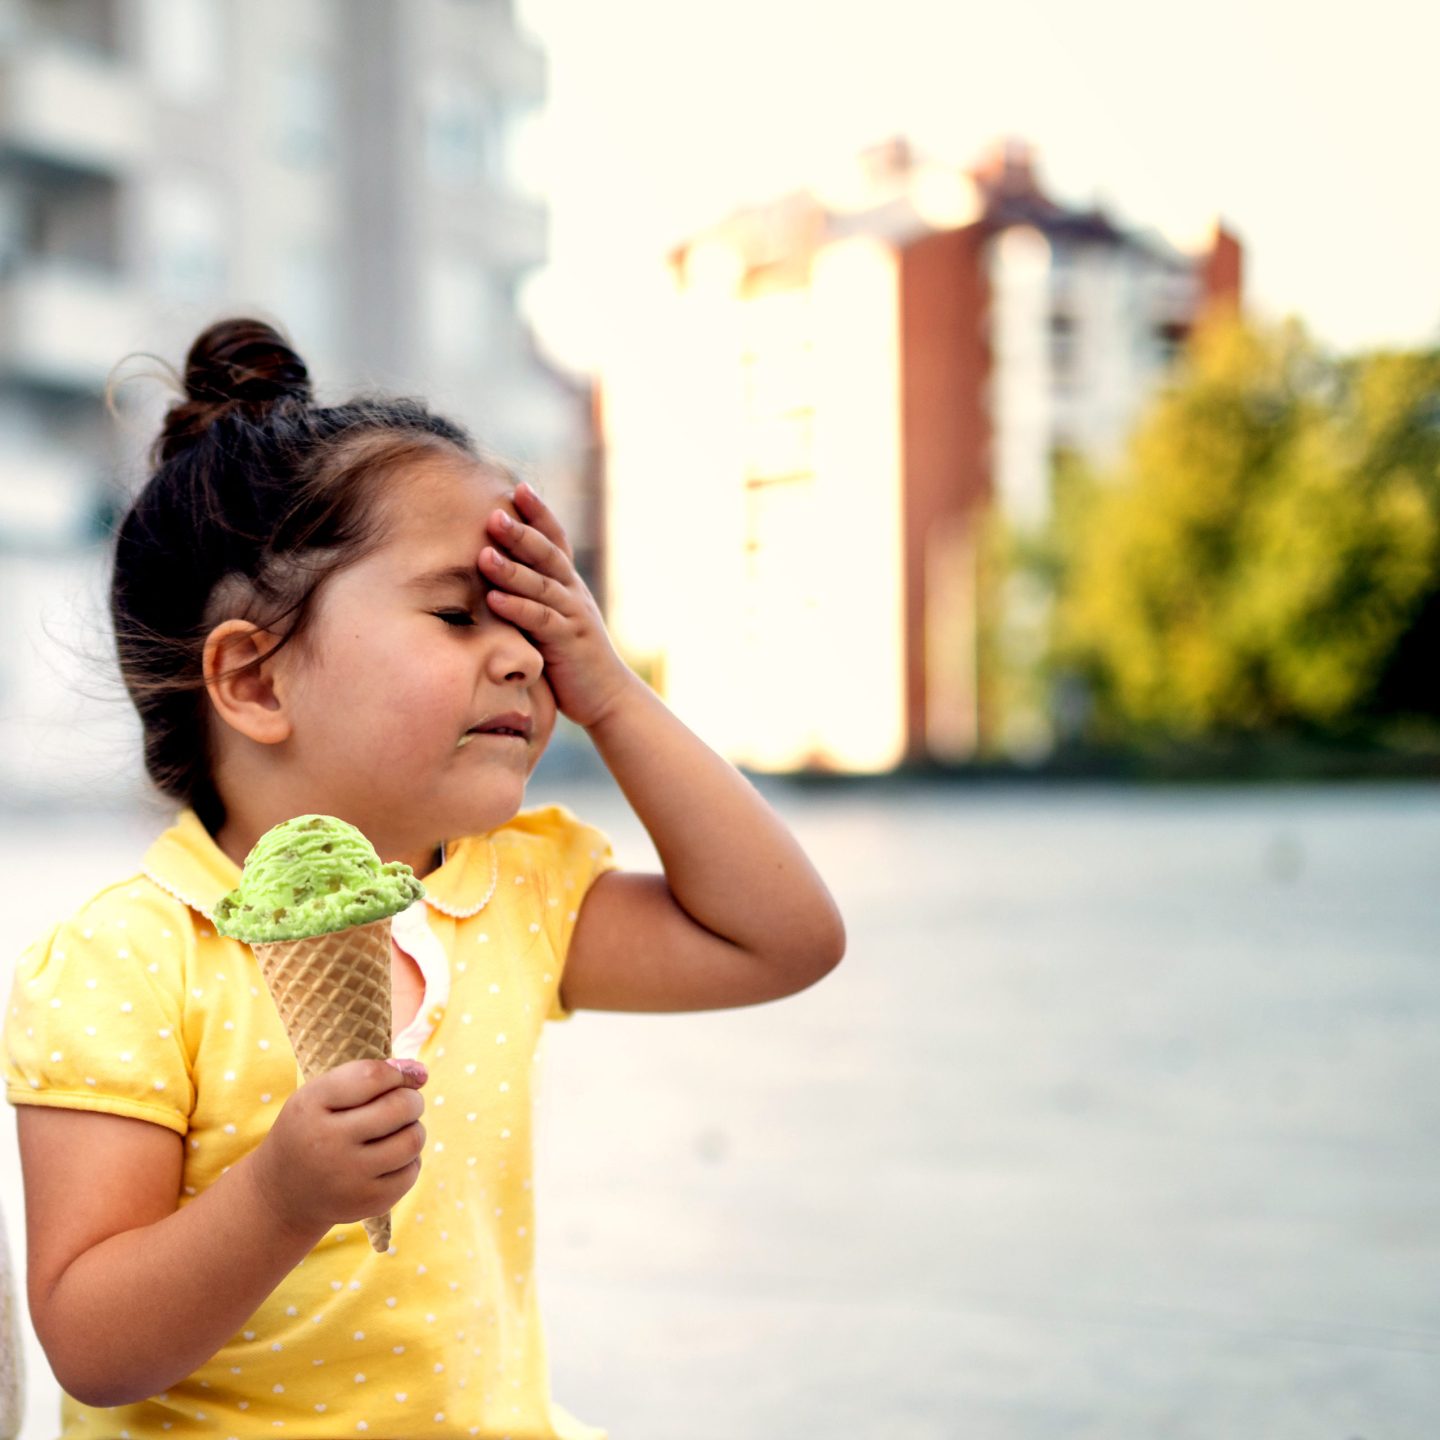 صداع المثلجات أو تجمد الدماغ: ماذا يحدث؟ وكيف يمكن التخلص منه؟